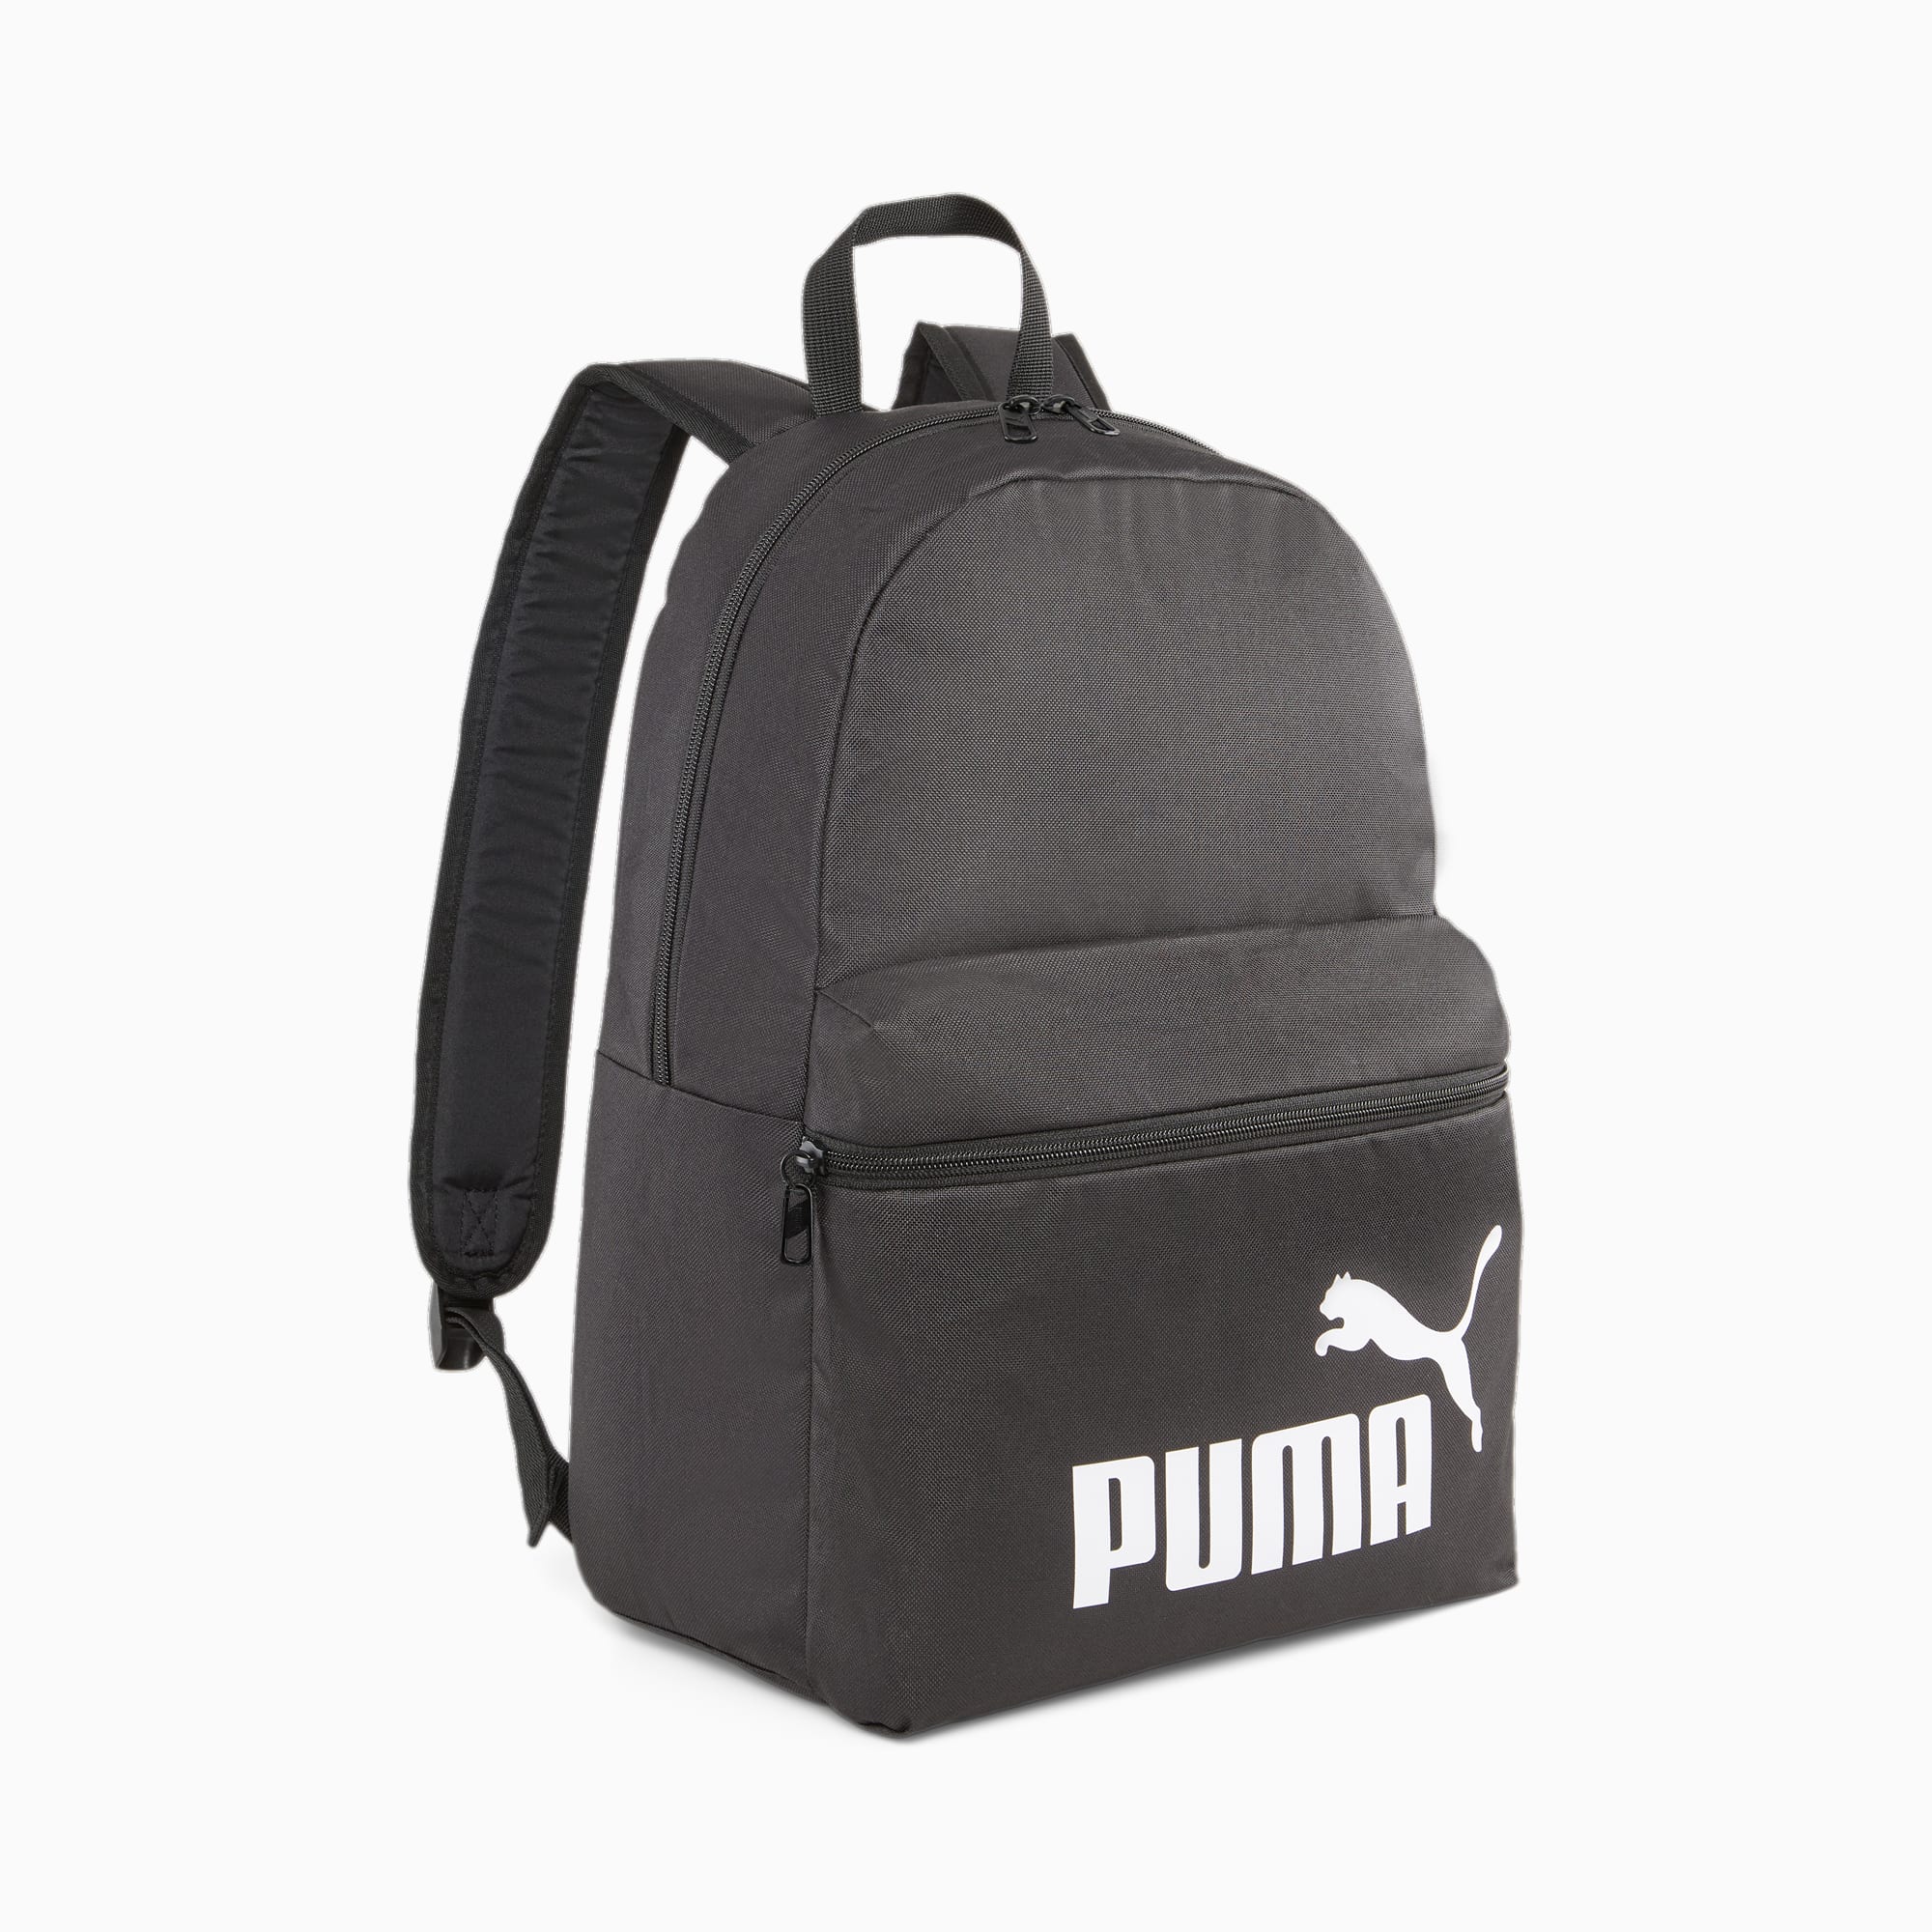 Phase | PUMA PUMA Backpack